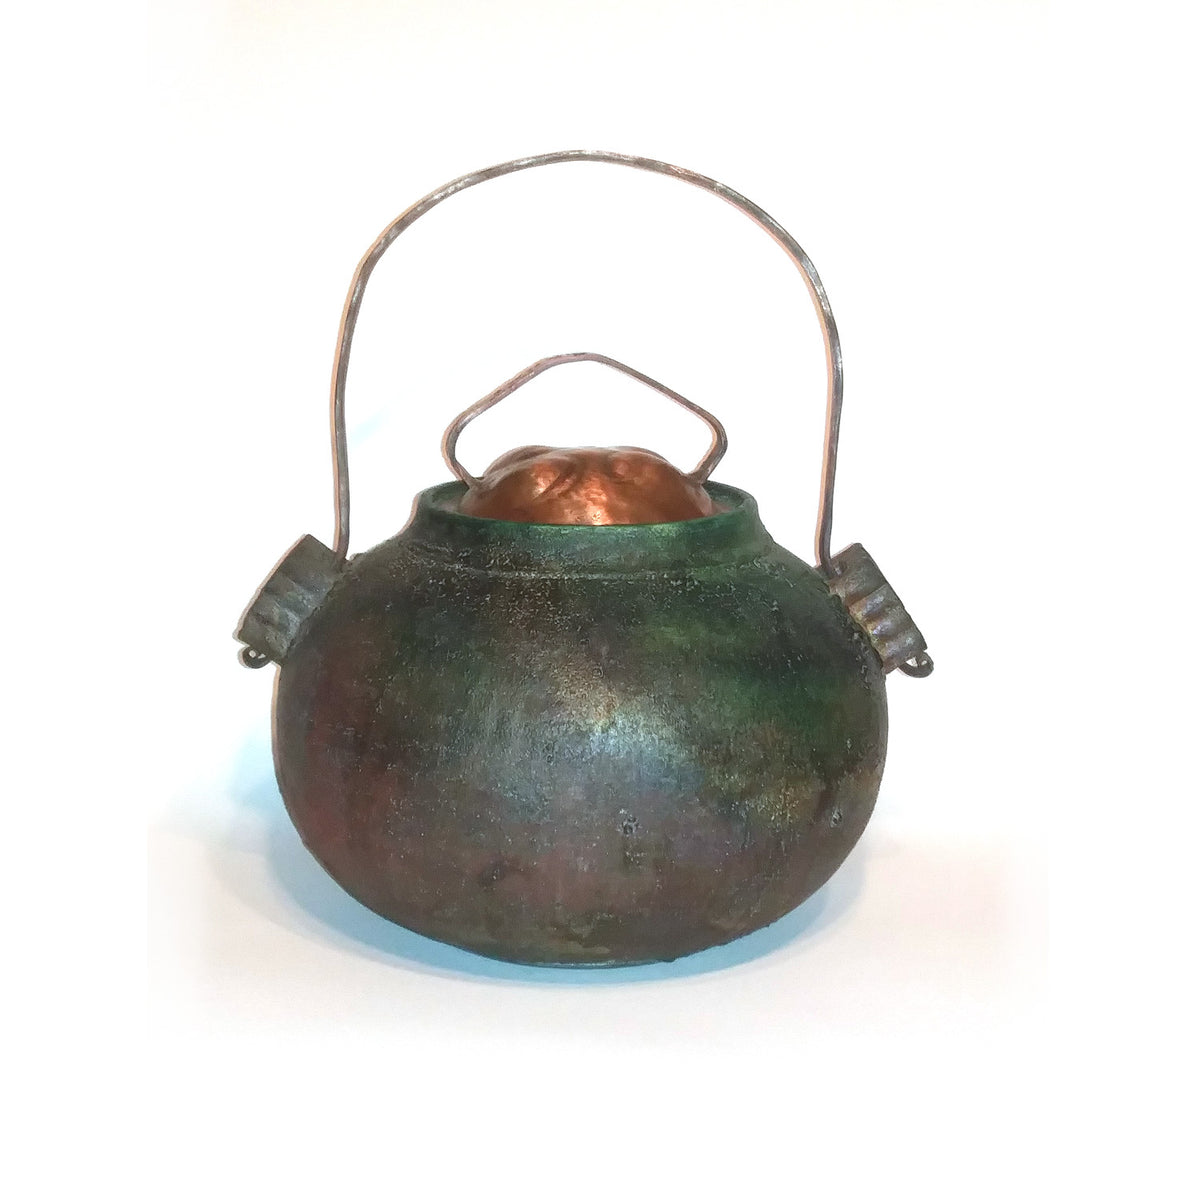 richard & susan surette - green/bronze glaze covered jar with copper lid